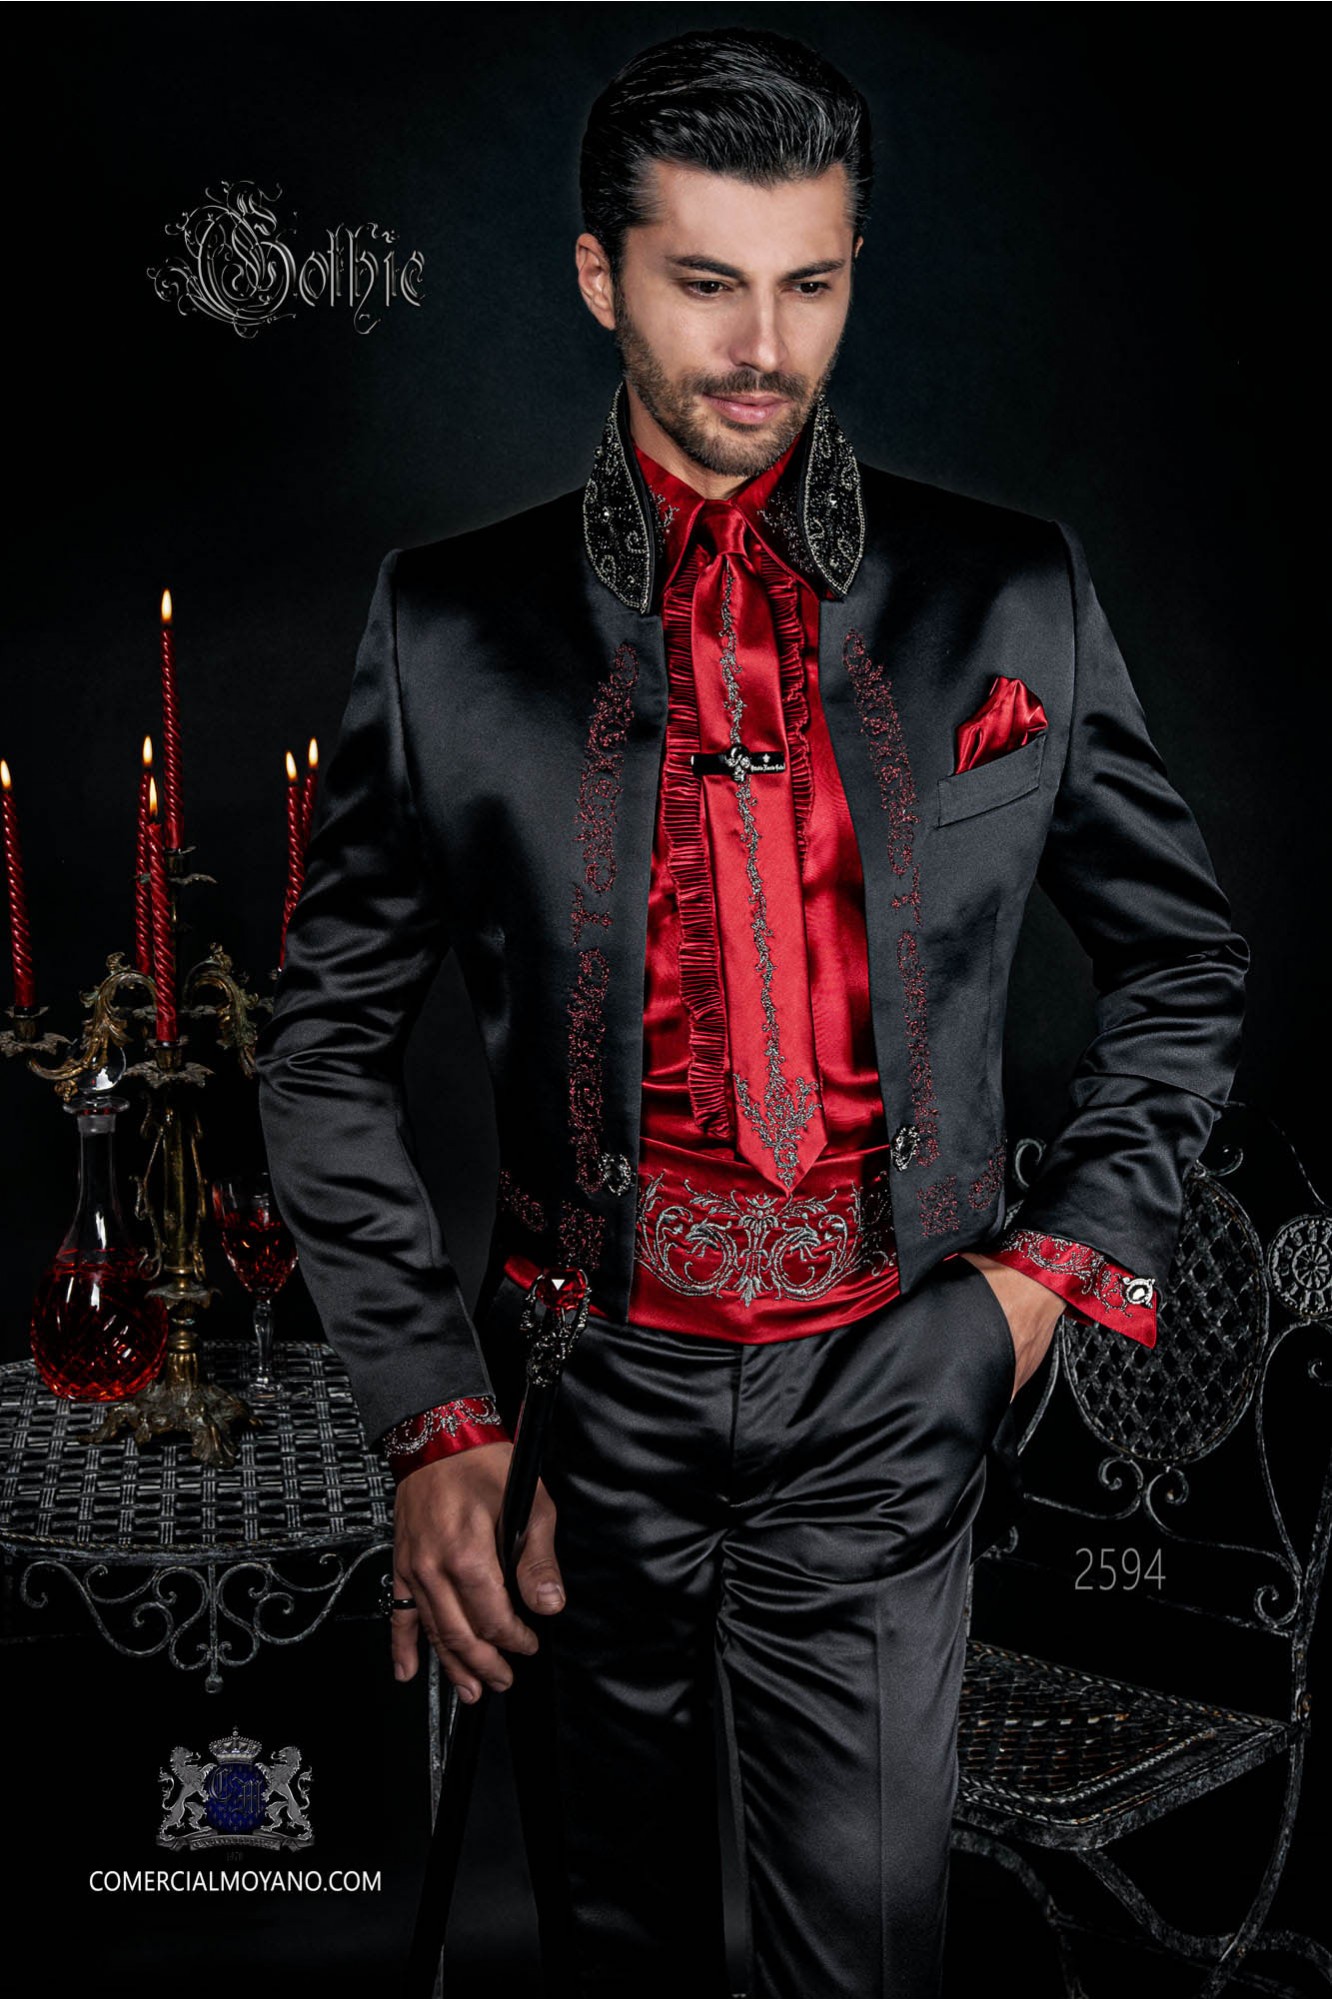 Traje de novio barroco, frac cuello mao de satén negro con bordados rojos y pedrería cristal en cuello modelo: 2594 Mario Moyano colección Barroco